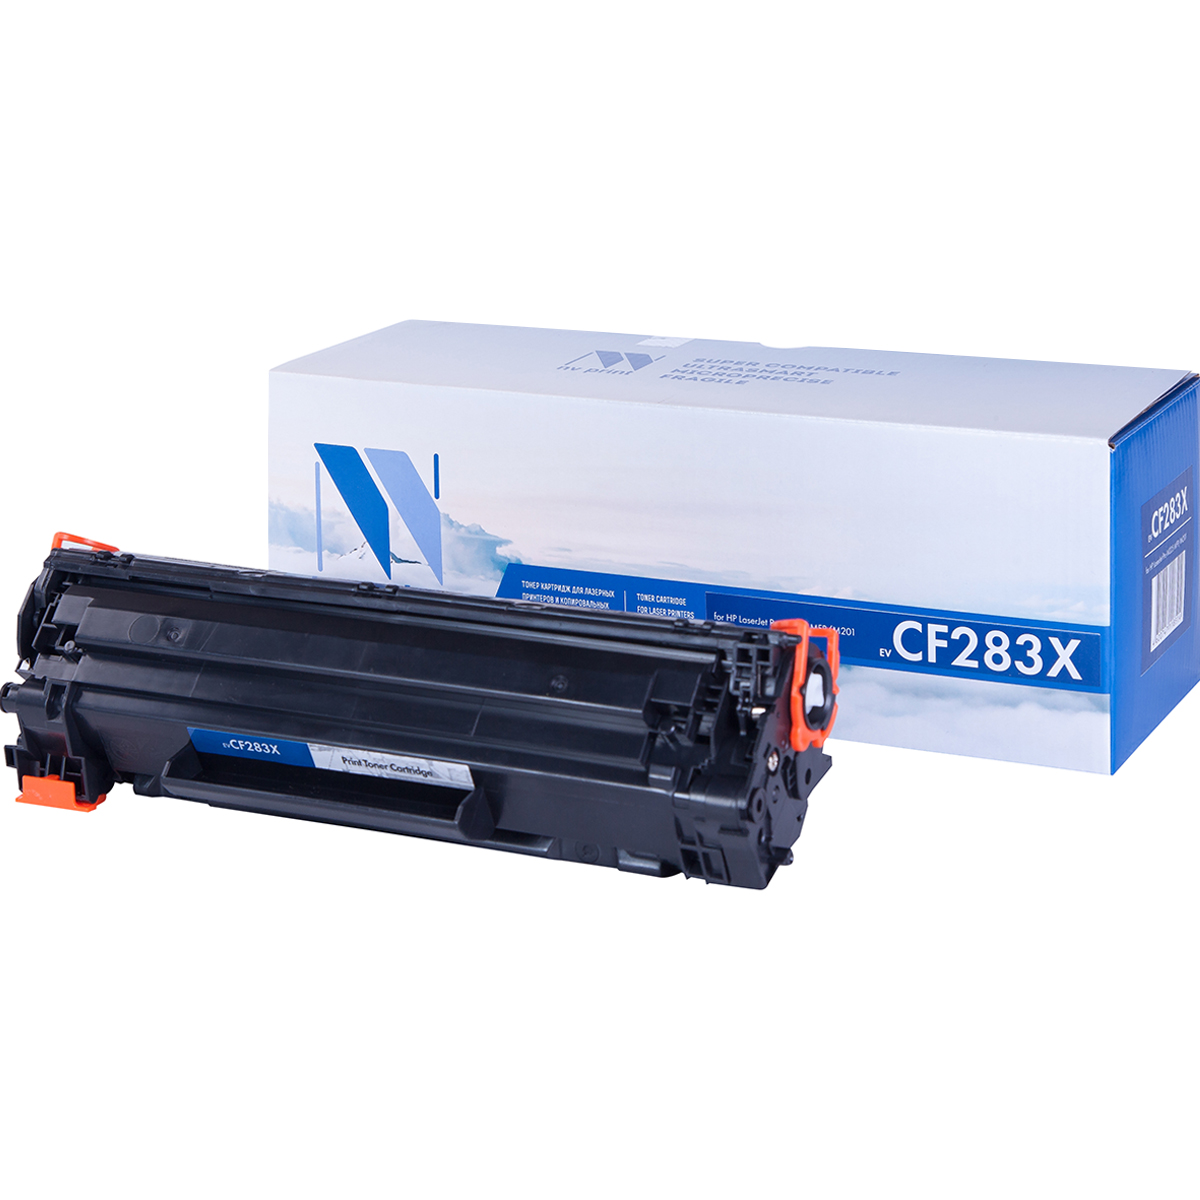 Картридж NV Print CF283X для Нewlett-Packard LaserJet Pro M225 MFP/M201 (2500k) шестерня cet привода резинового вала 26t для hp laserjet p1606 m201 m225 аналог ru7 0139 cet cet6633